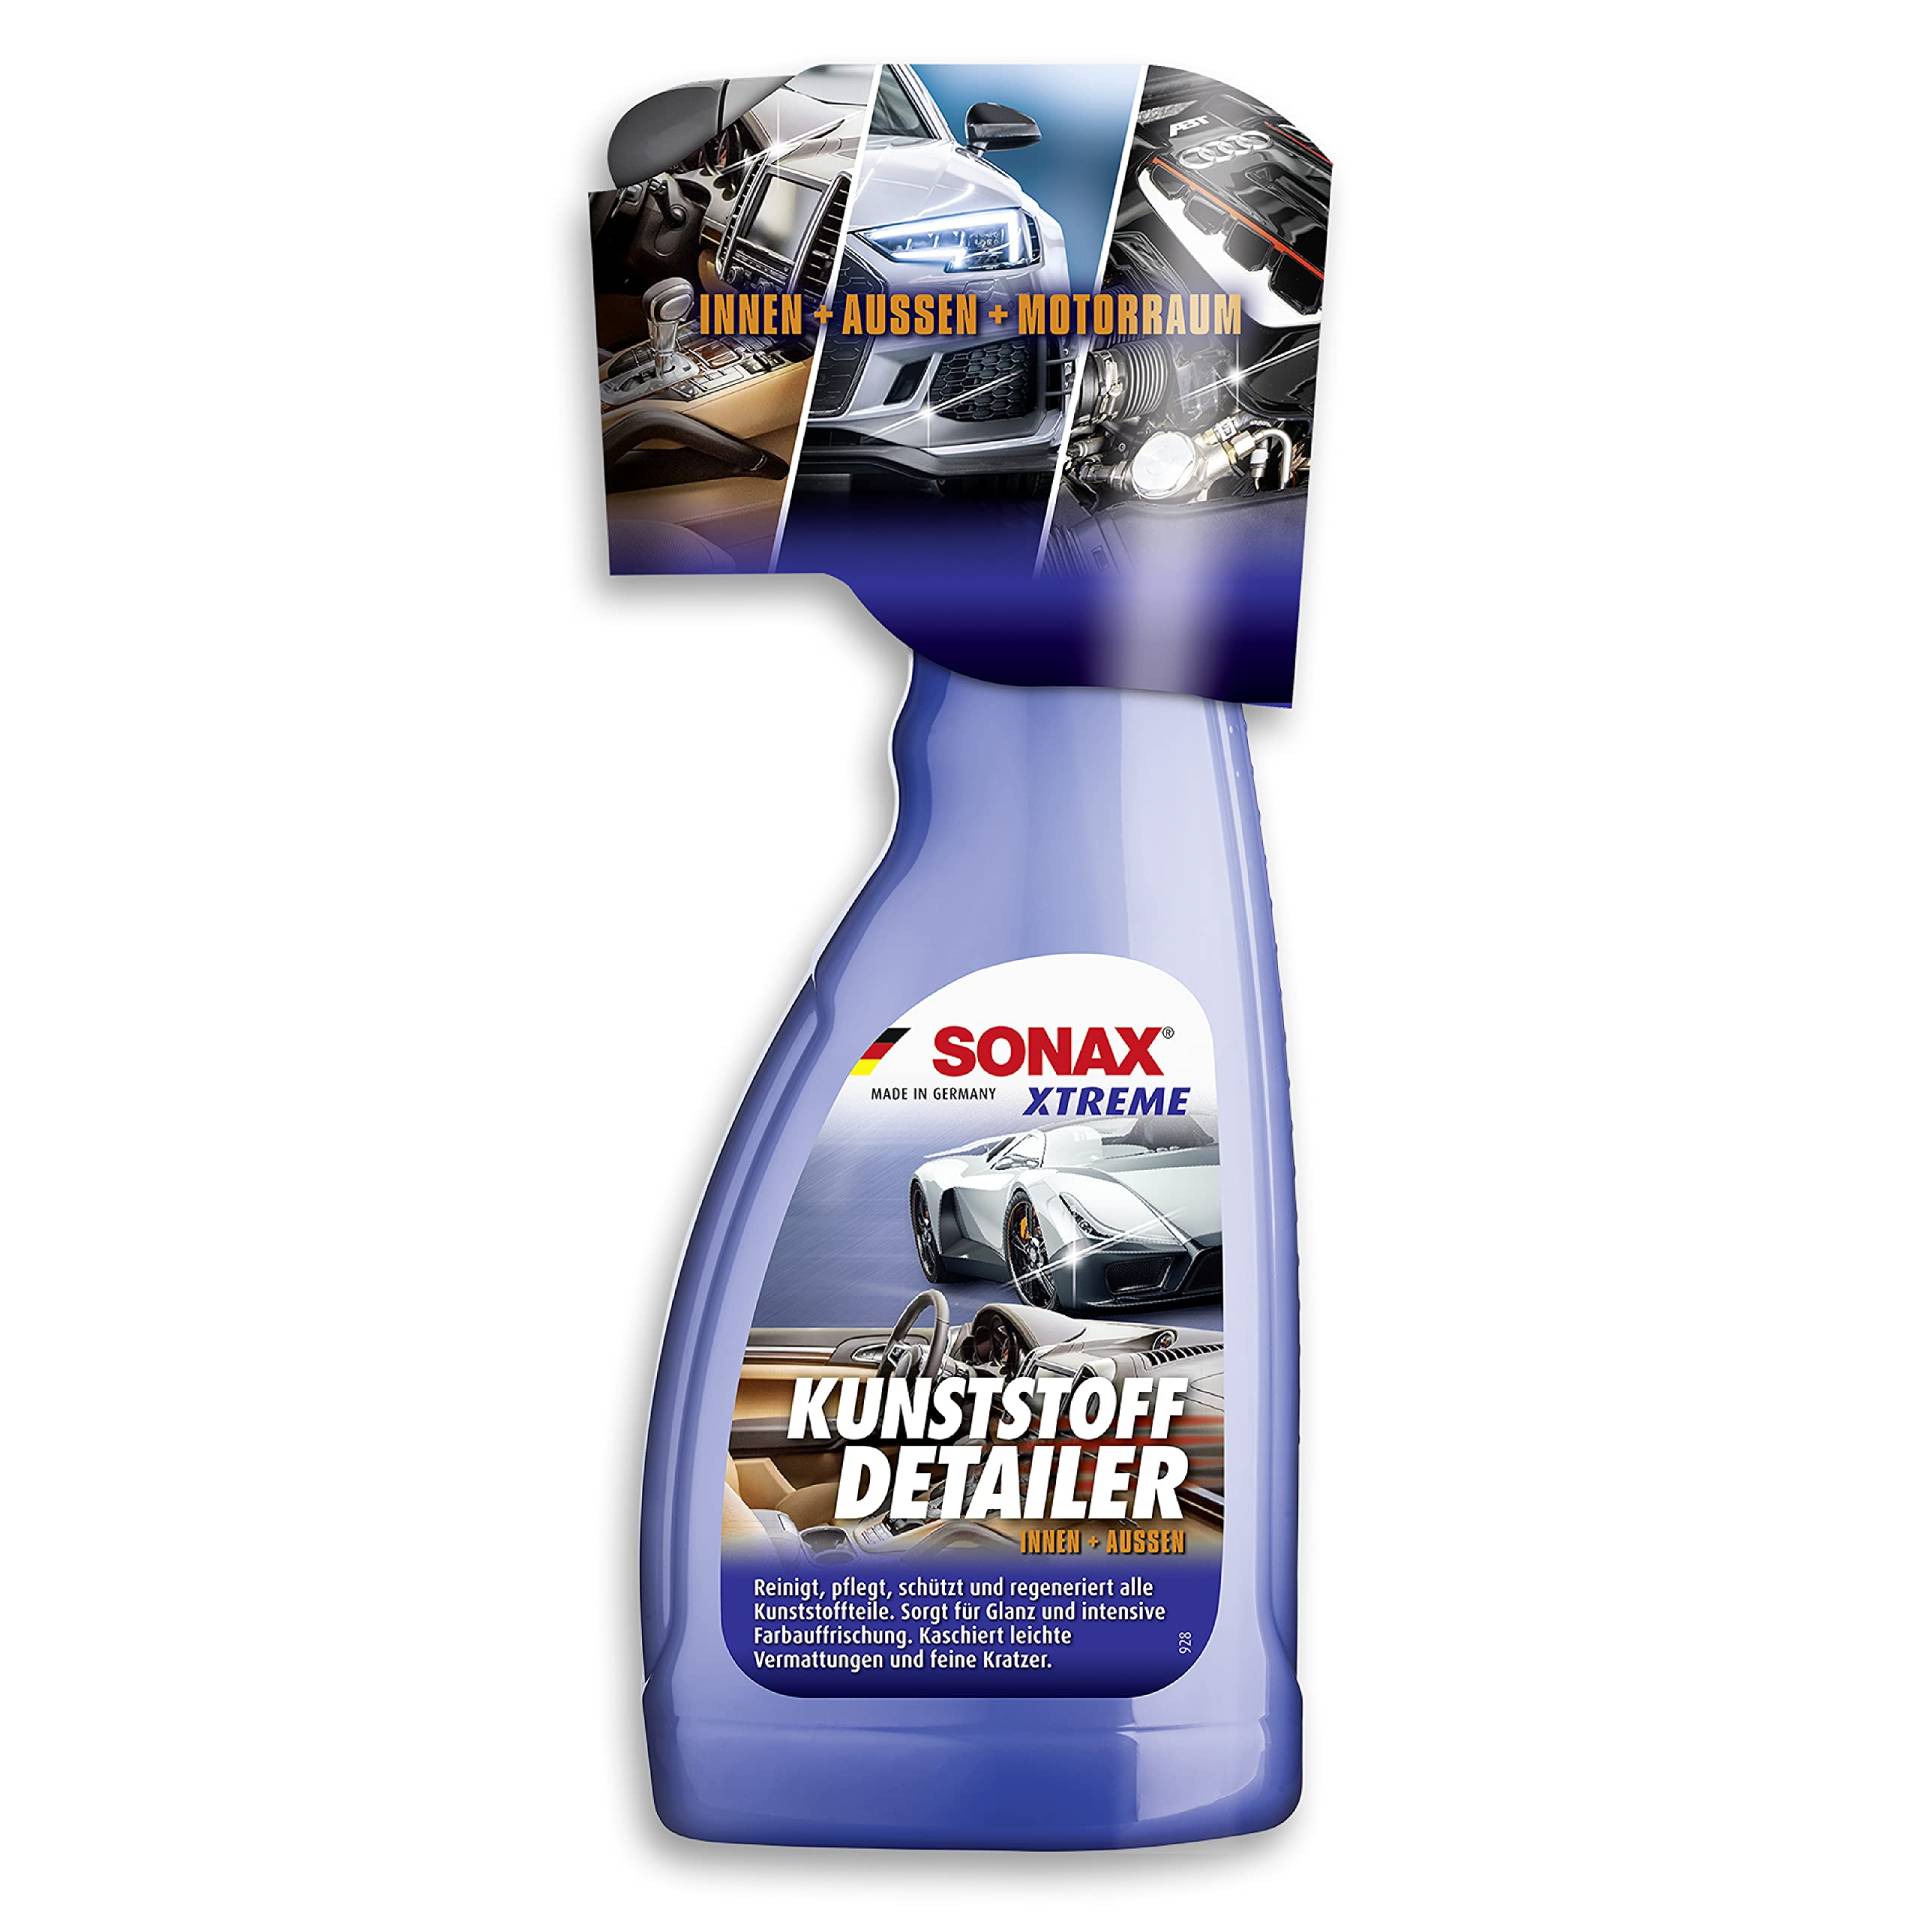 SONAX XTREME KunststoffDetailer Innen + Außen (500 ml) Reinigung, Pflege und Schutz für das gesamte Fahrzeug | Art-Nr. 02552410 von SONAX